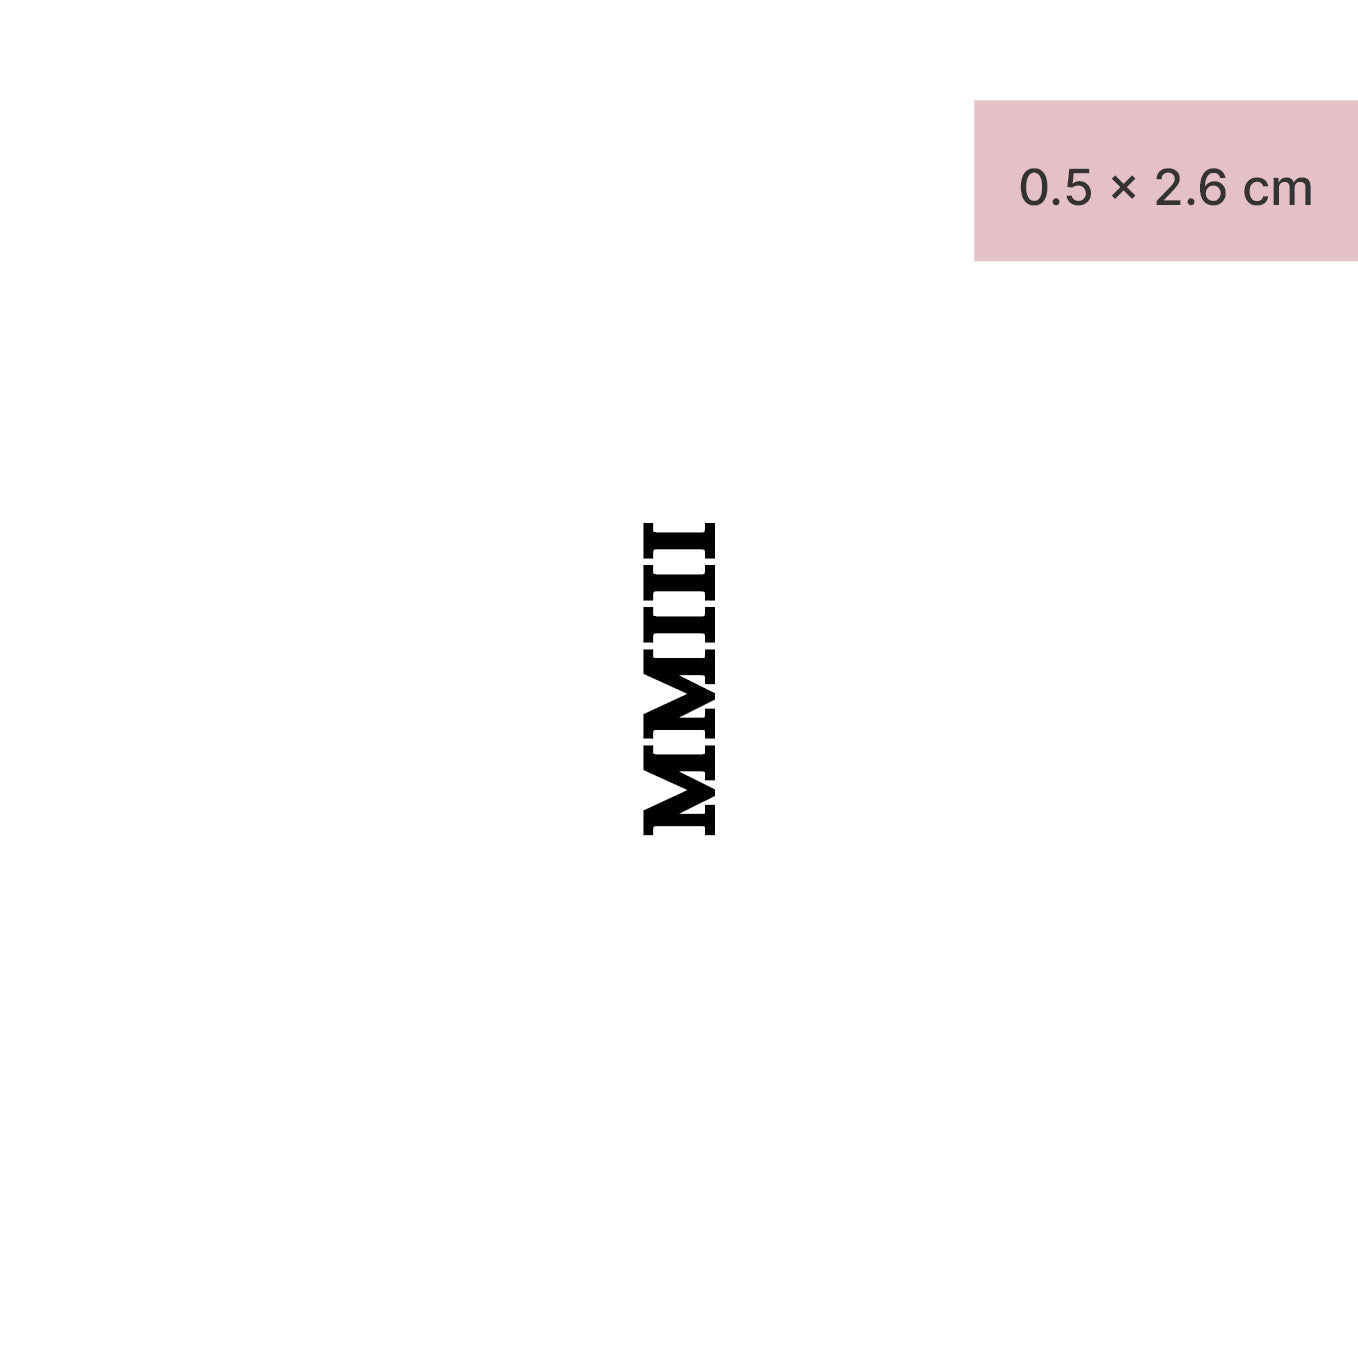 Zahlen Tattoo Römische Zahl MMIII (2003) von minink, der Marke für temporäre Tattoos.